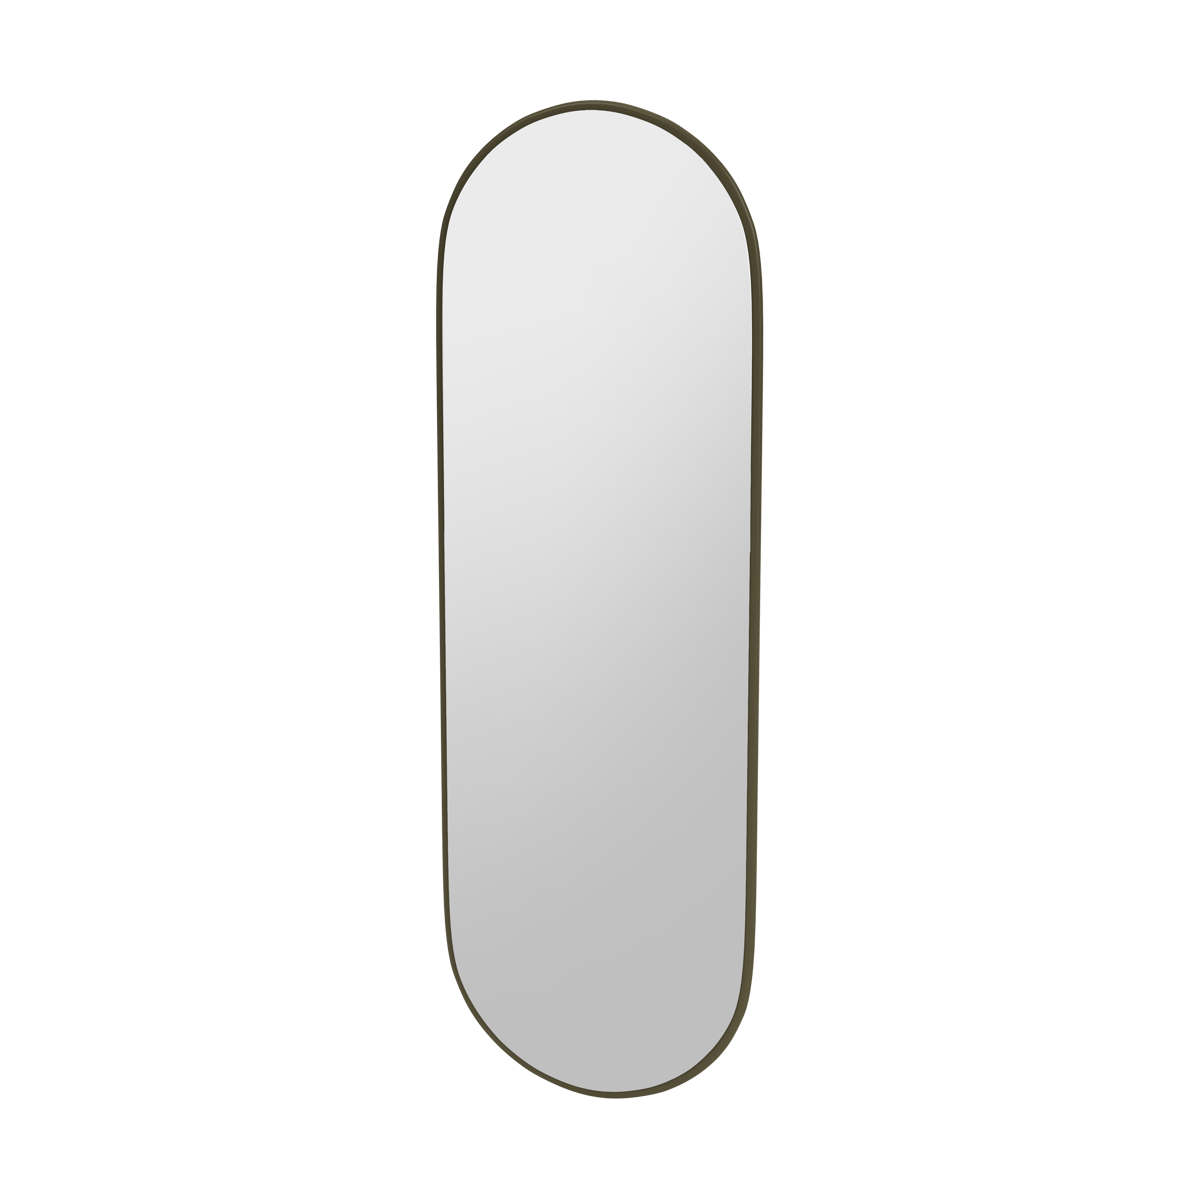 Montana FIGUUR Mirror Spiegel - SP824R Oregano